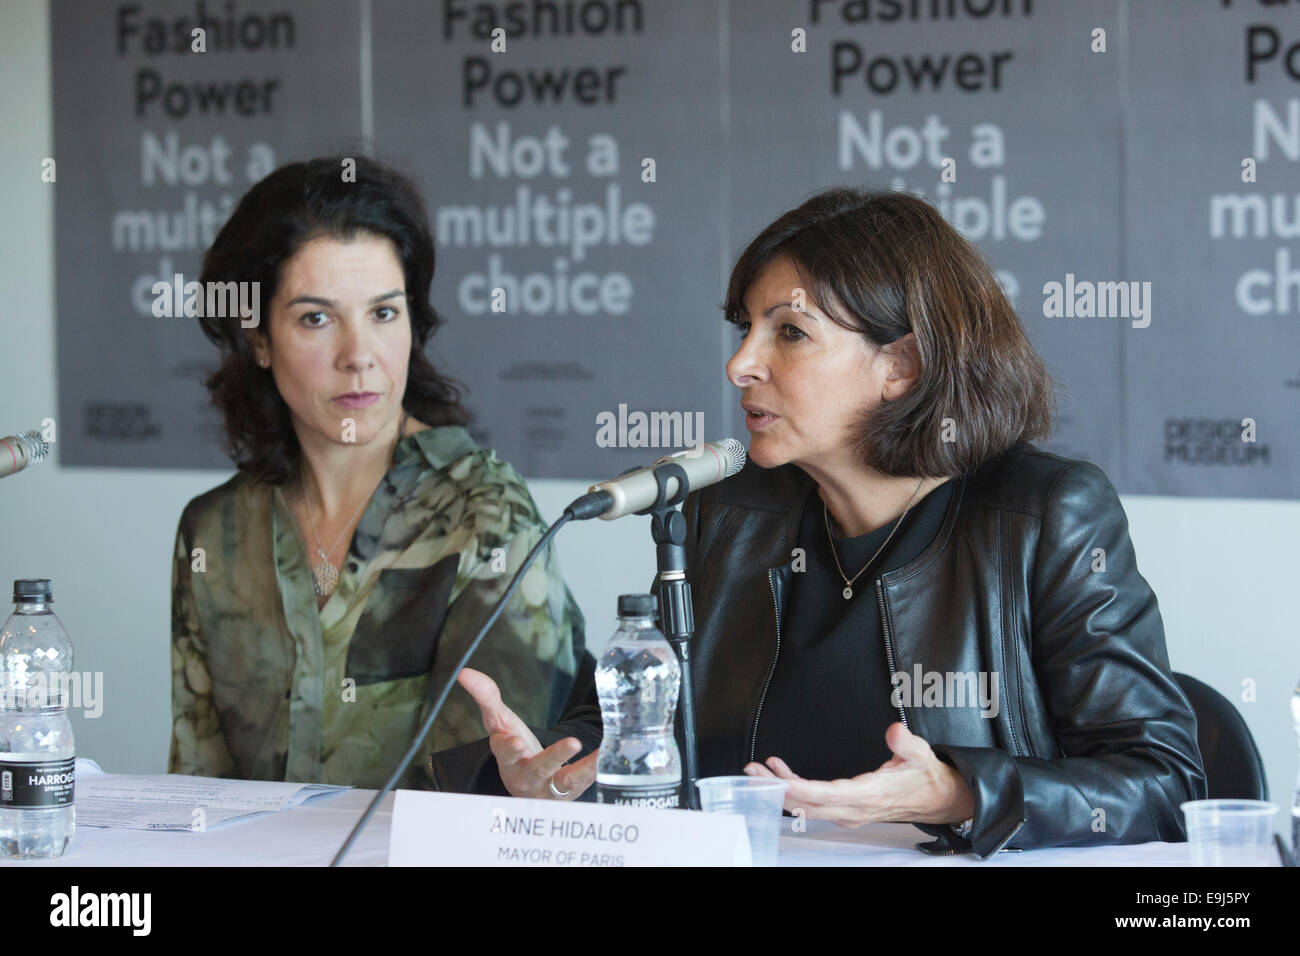 Anne Hidalgo, maire de Paris, s'ouvre l'exposition "Les femmes fashion power' au Design Museum, Londres, avec alice noir, à gauche. Banque D'Images